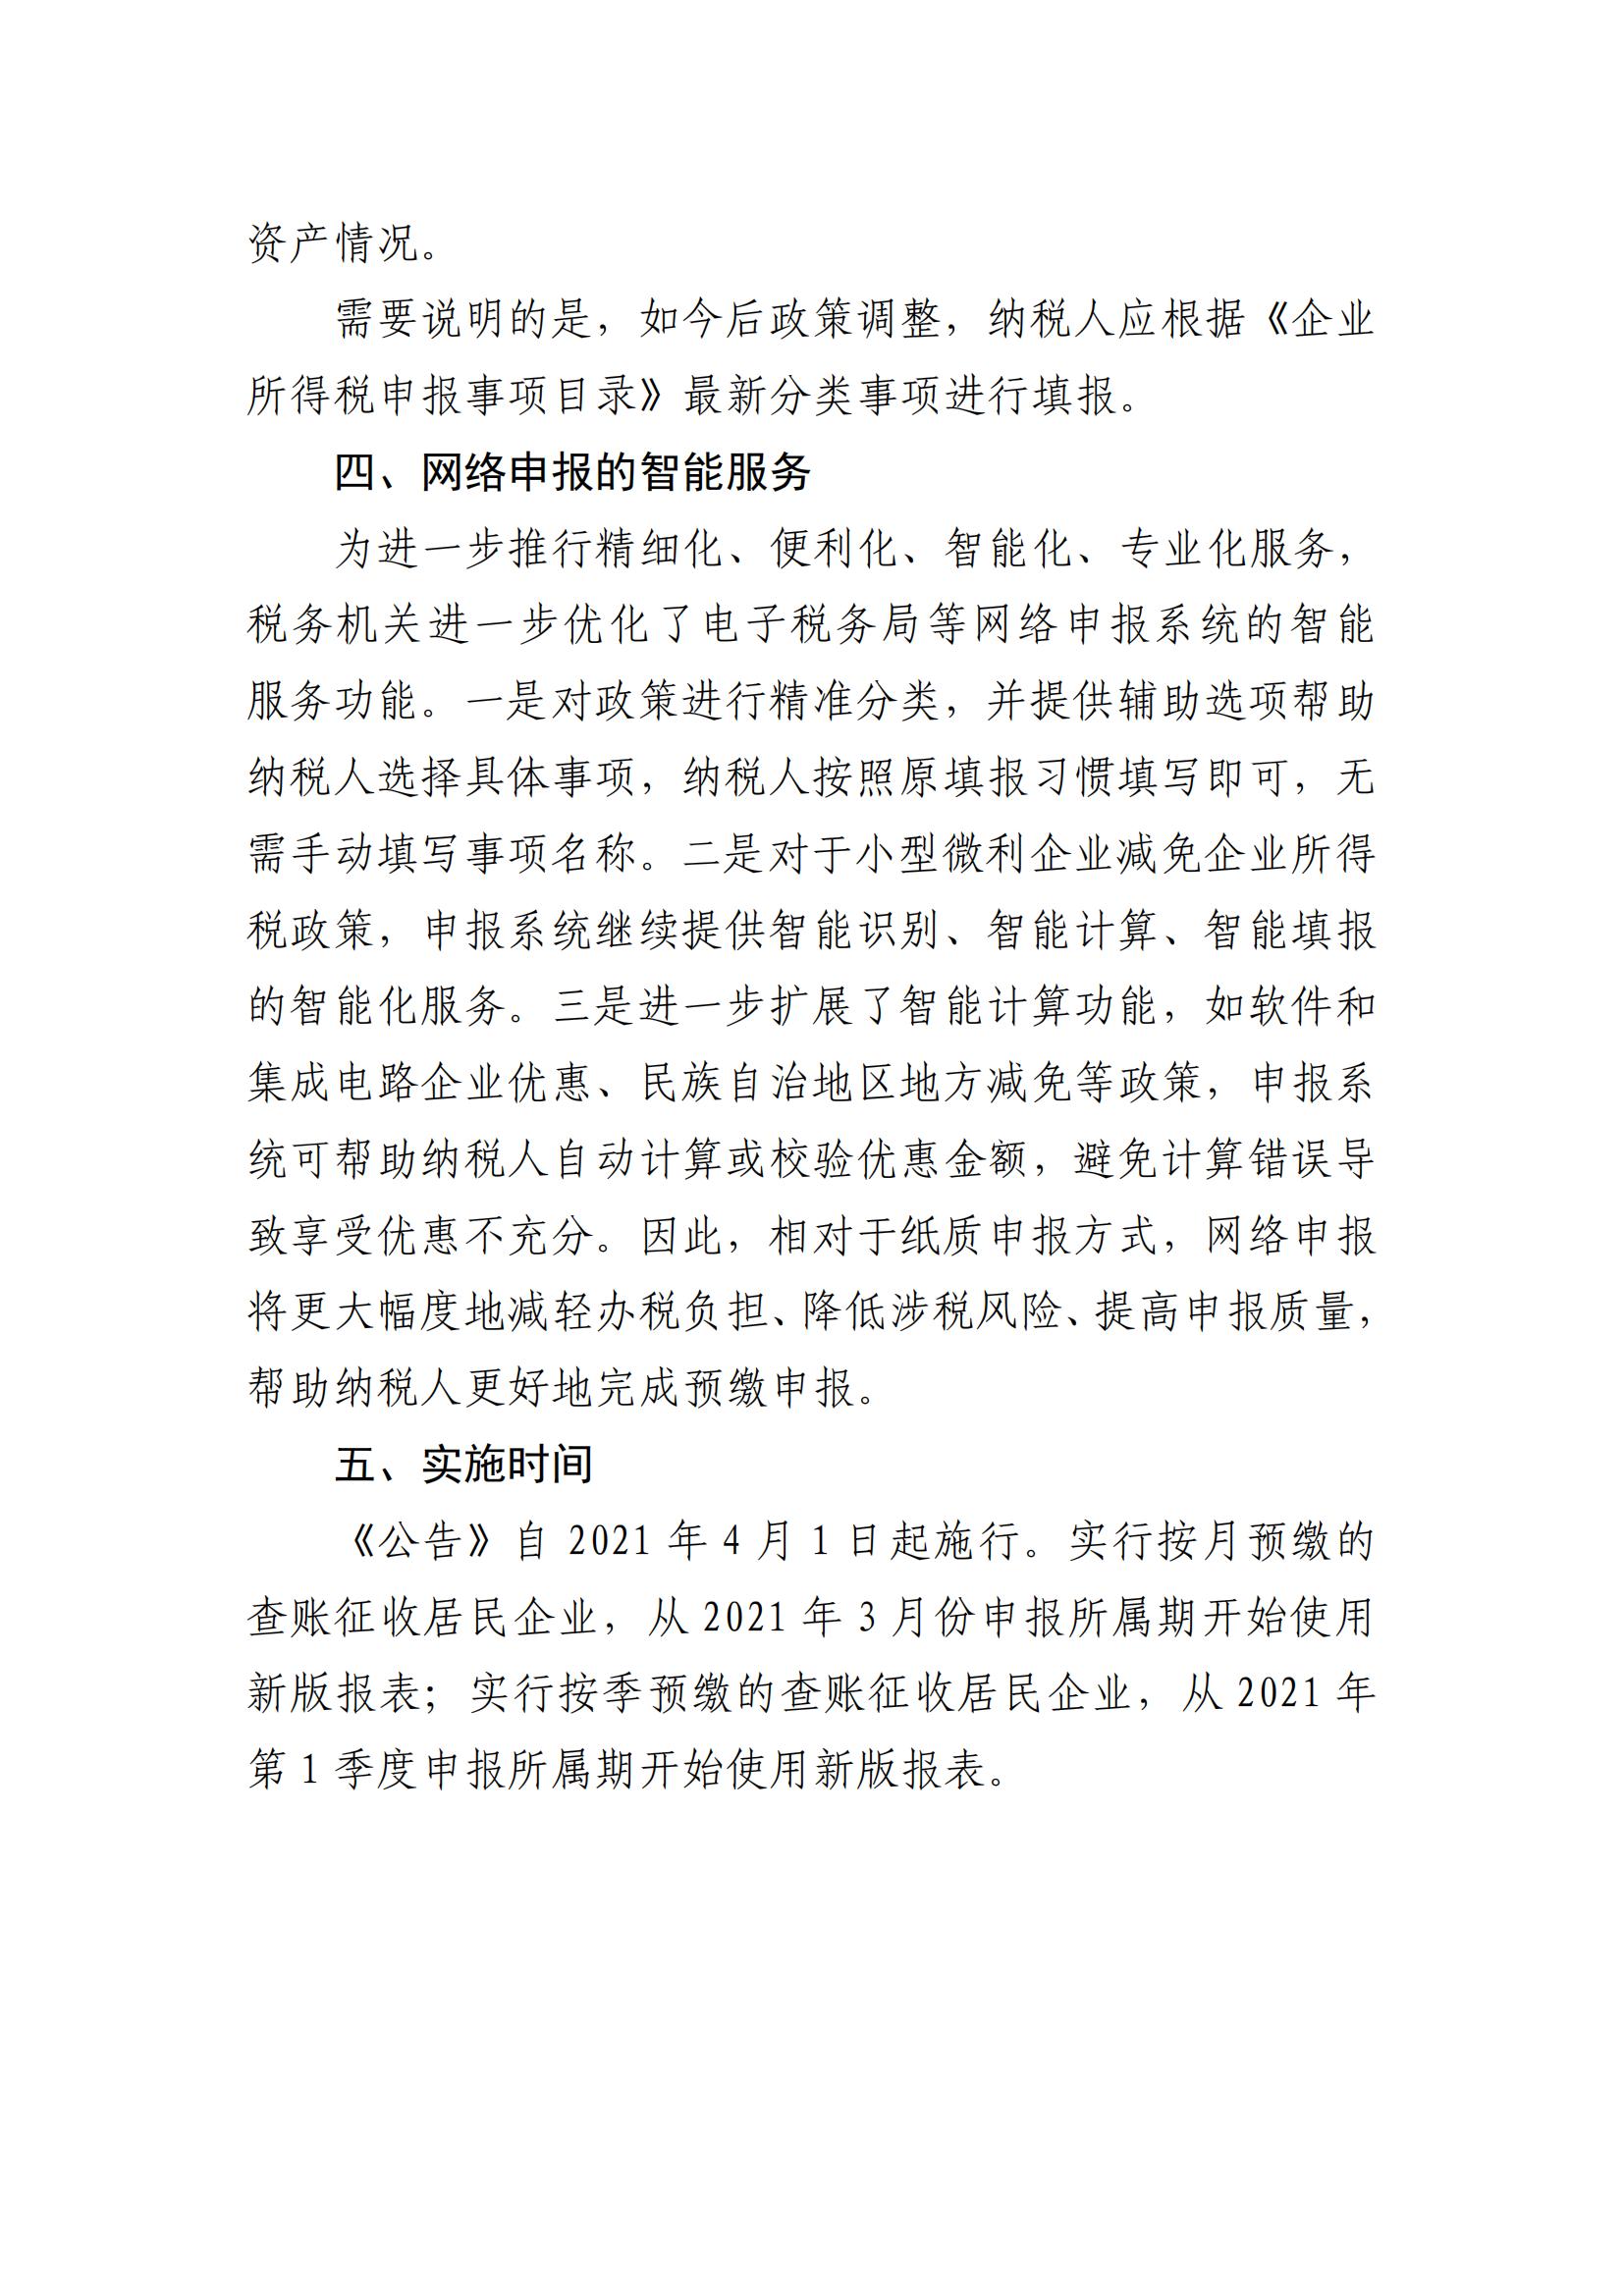 广州市从化区财政局关于《国家税务总局关于发布〈中华人民共和国企业所得税月（季）度预缴纳税申报表（A类）〉的公告》的解读_06.jpg